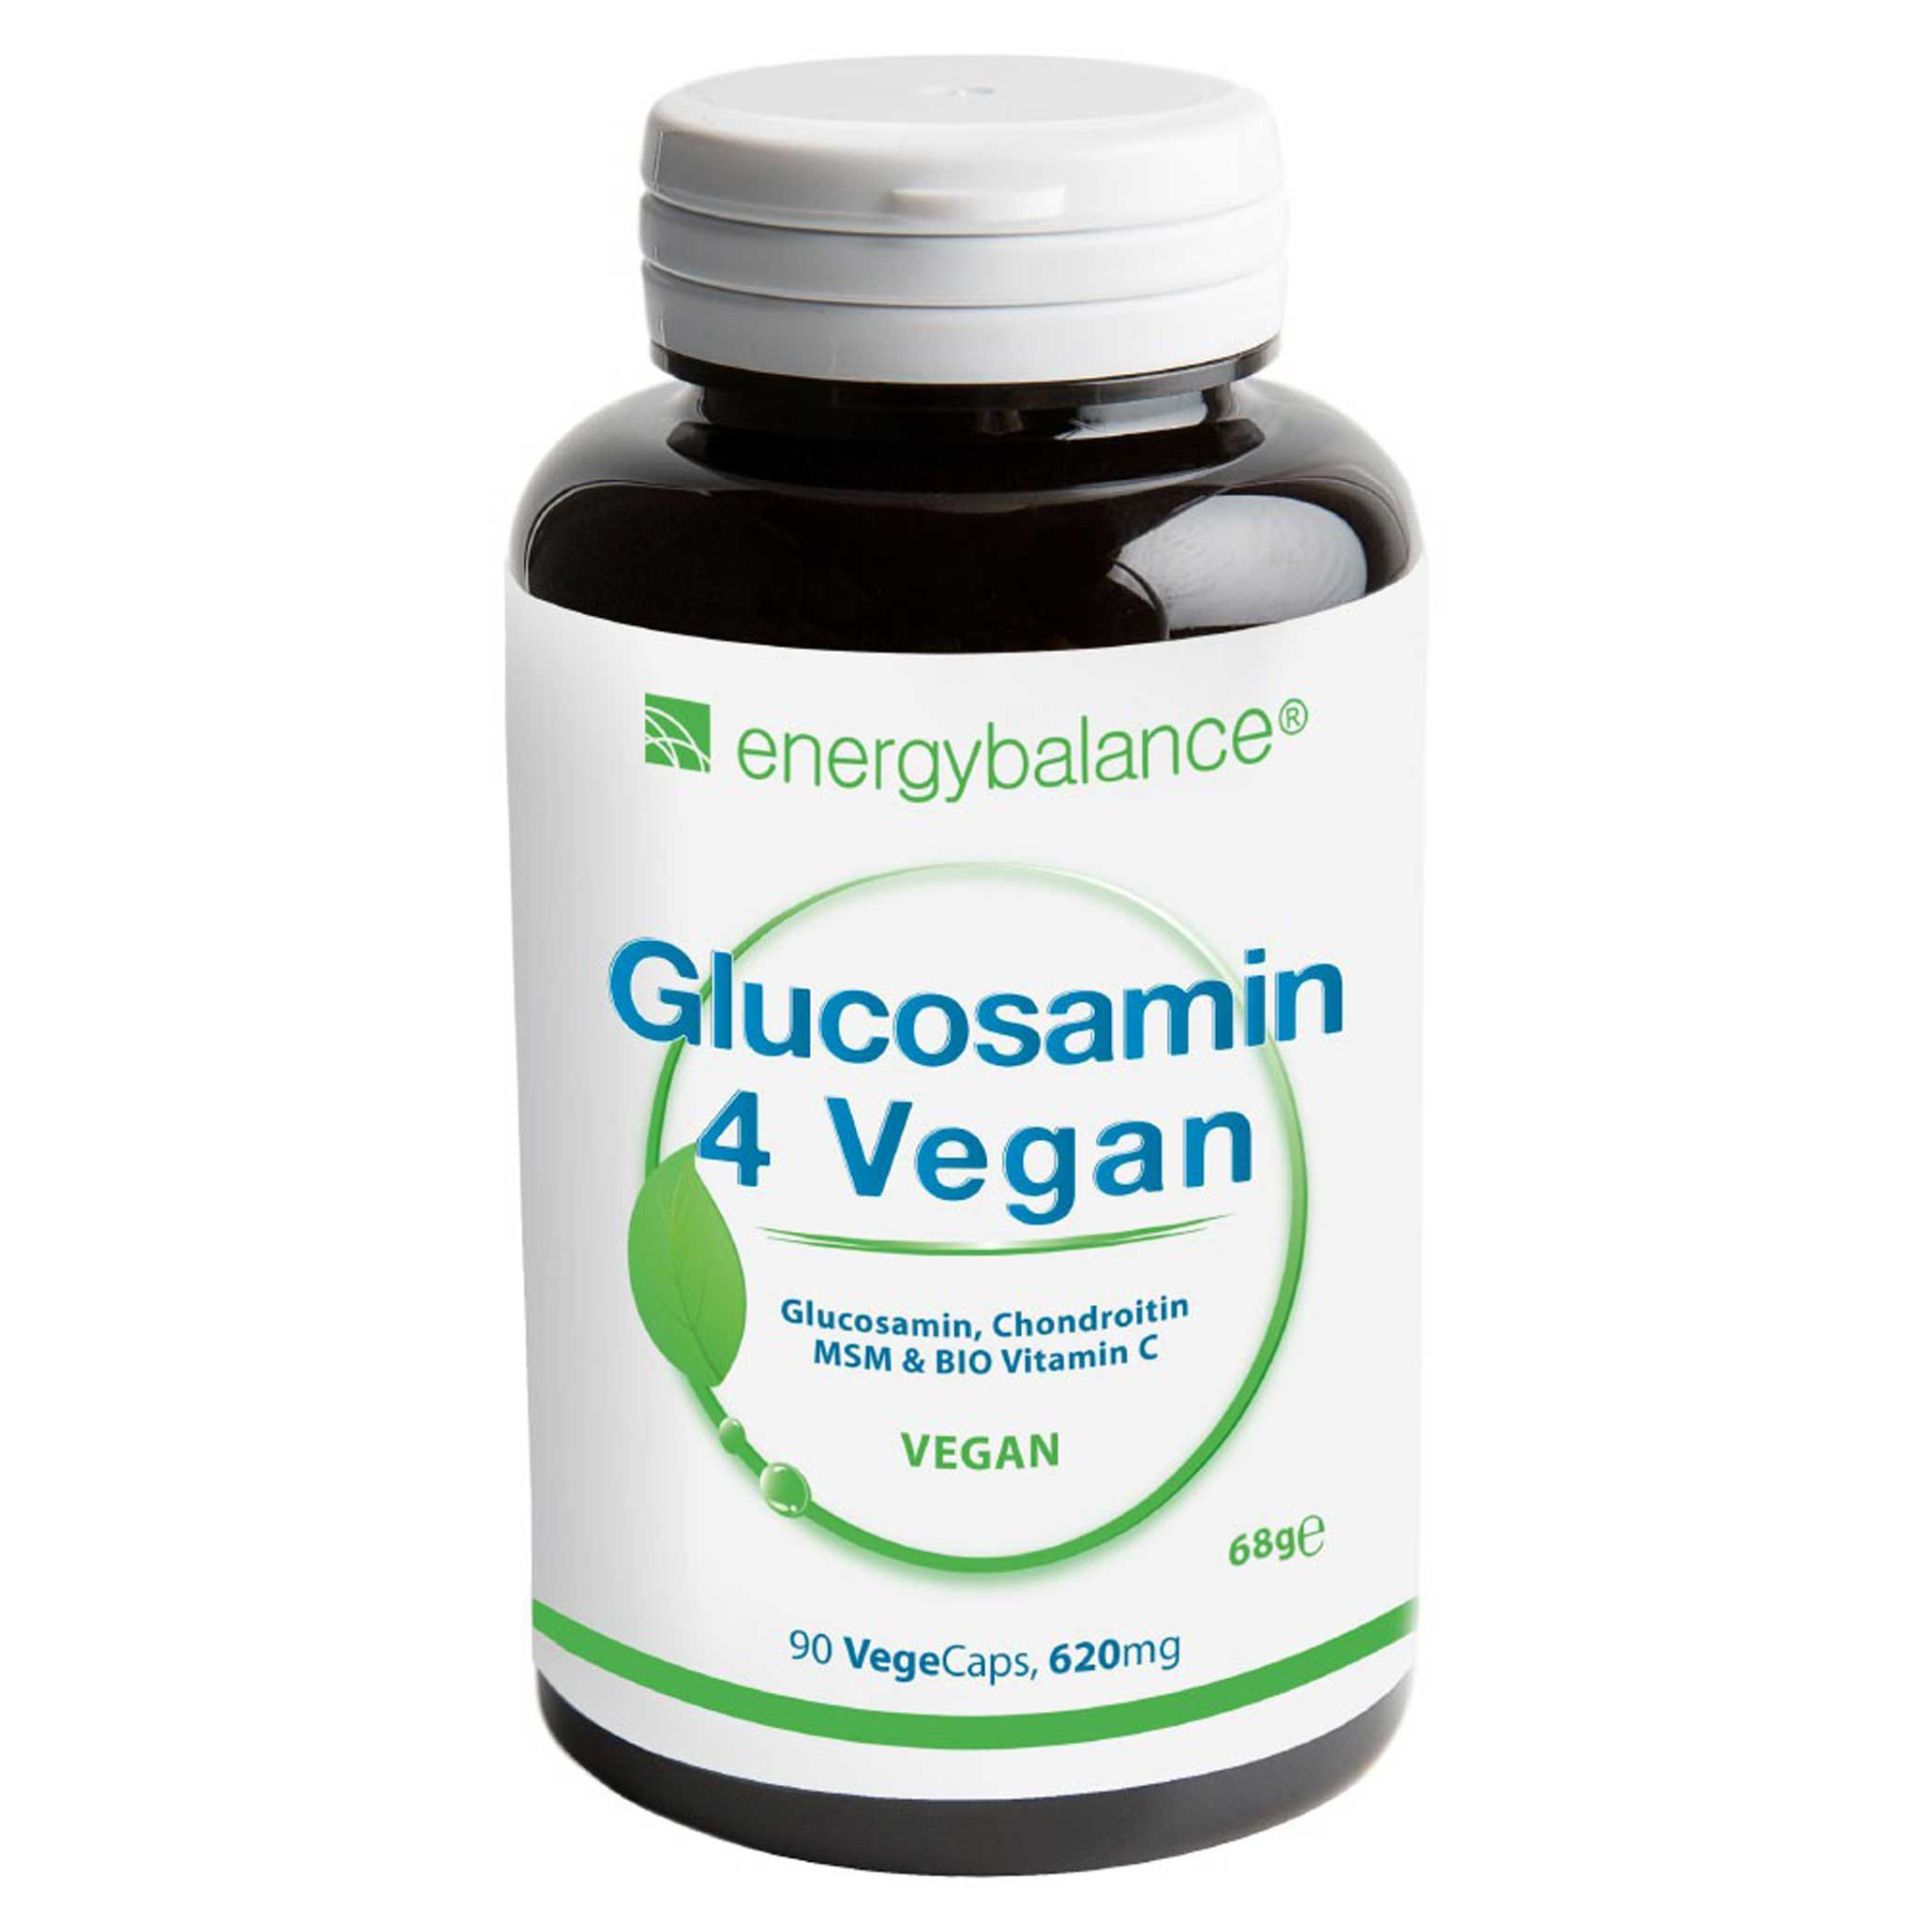 Glucosamin 4 Vegan, 90 VegeCaps